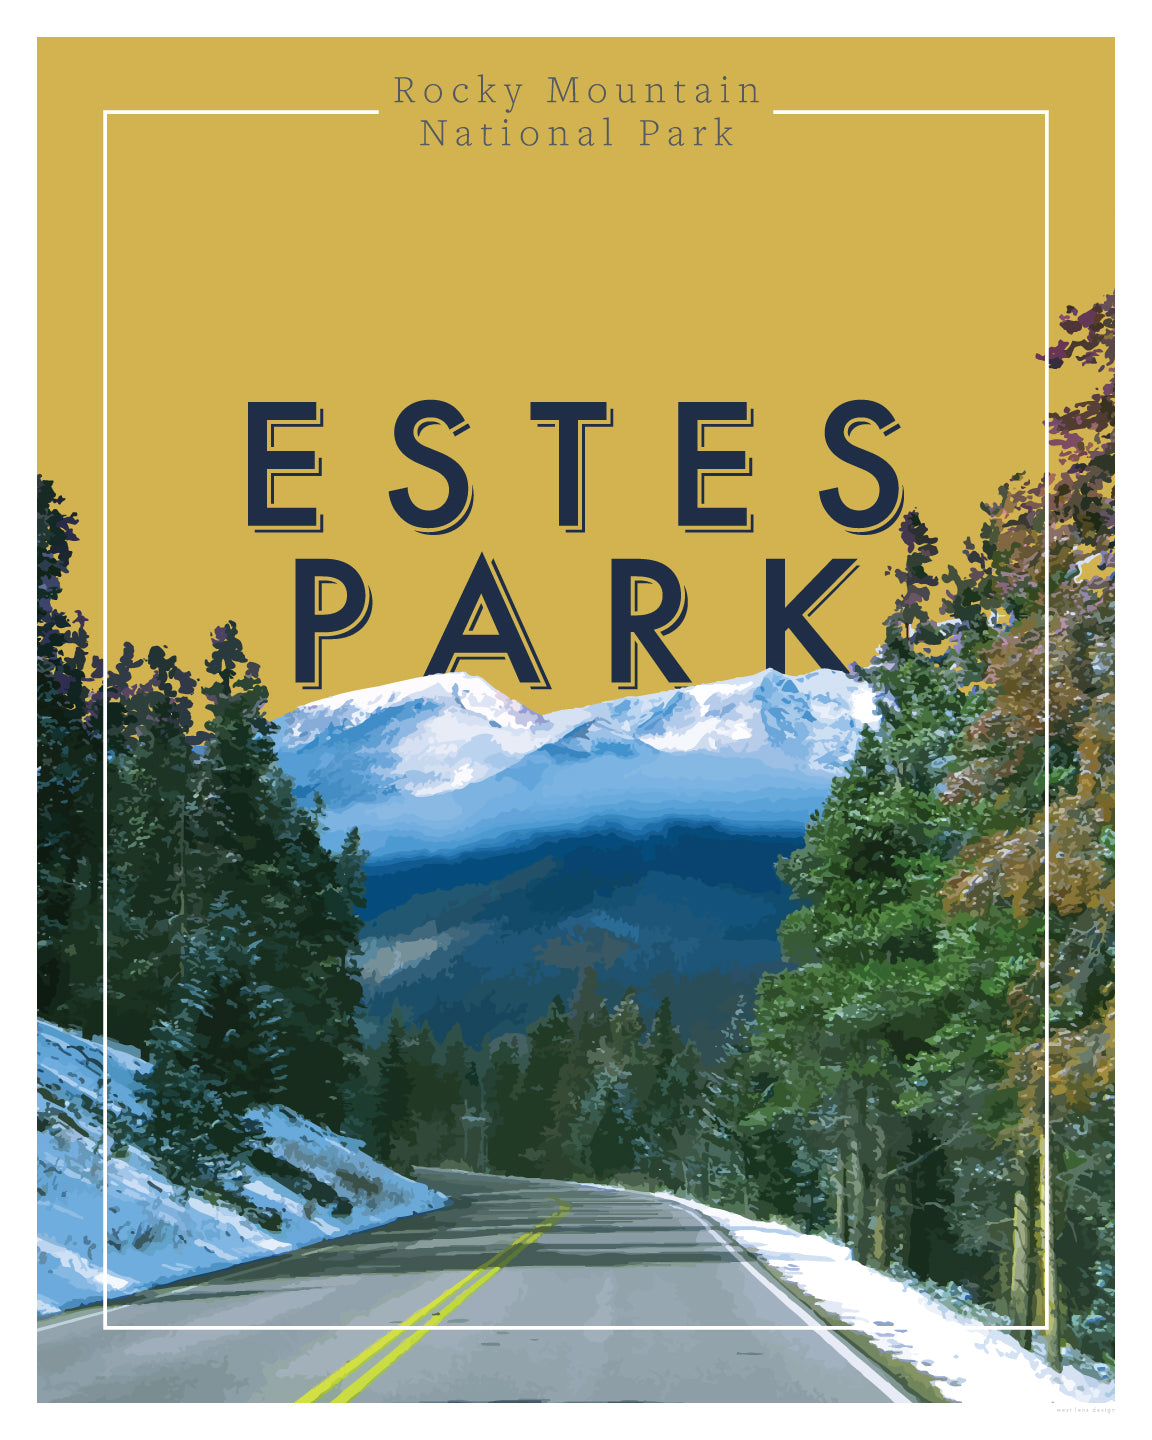 Estes Park, Colorado - Rocky Mountain National Park, Wall Art, Print Only (No Frame)